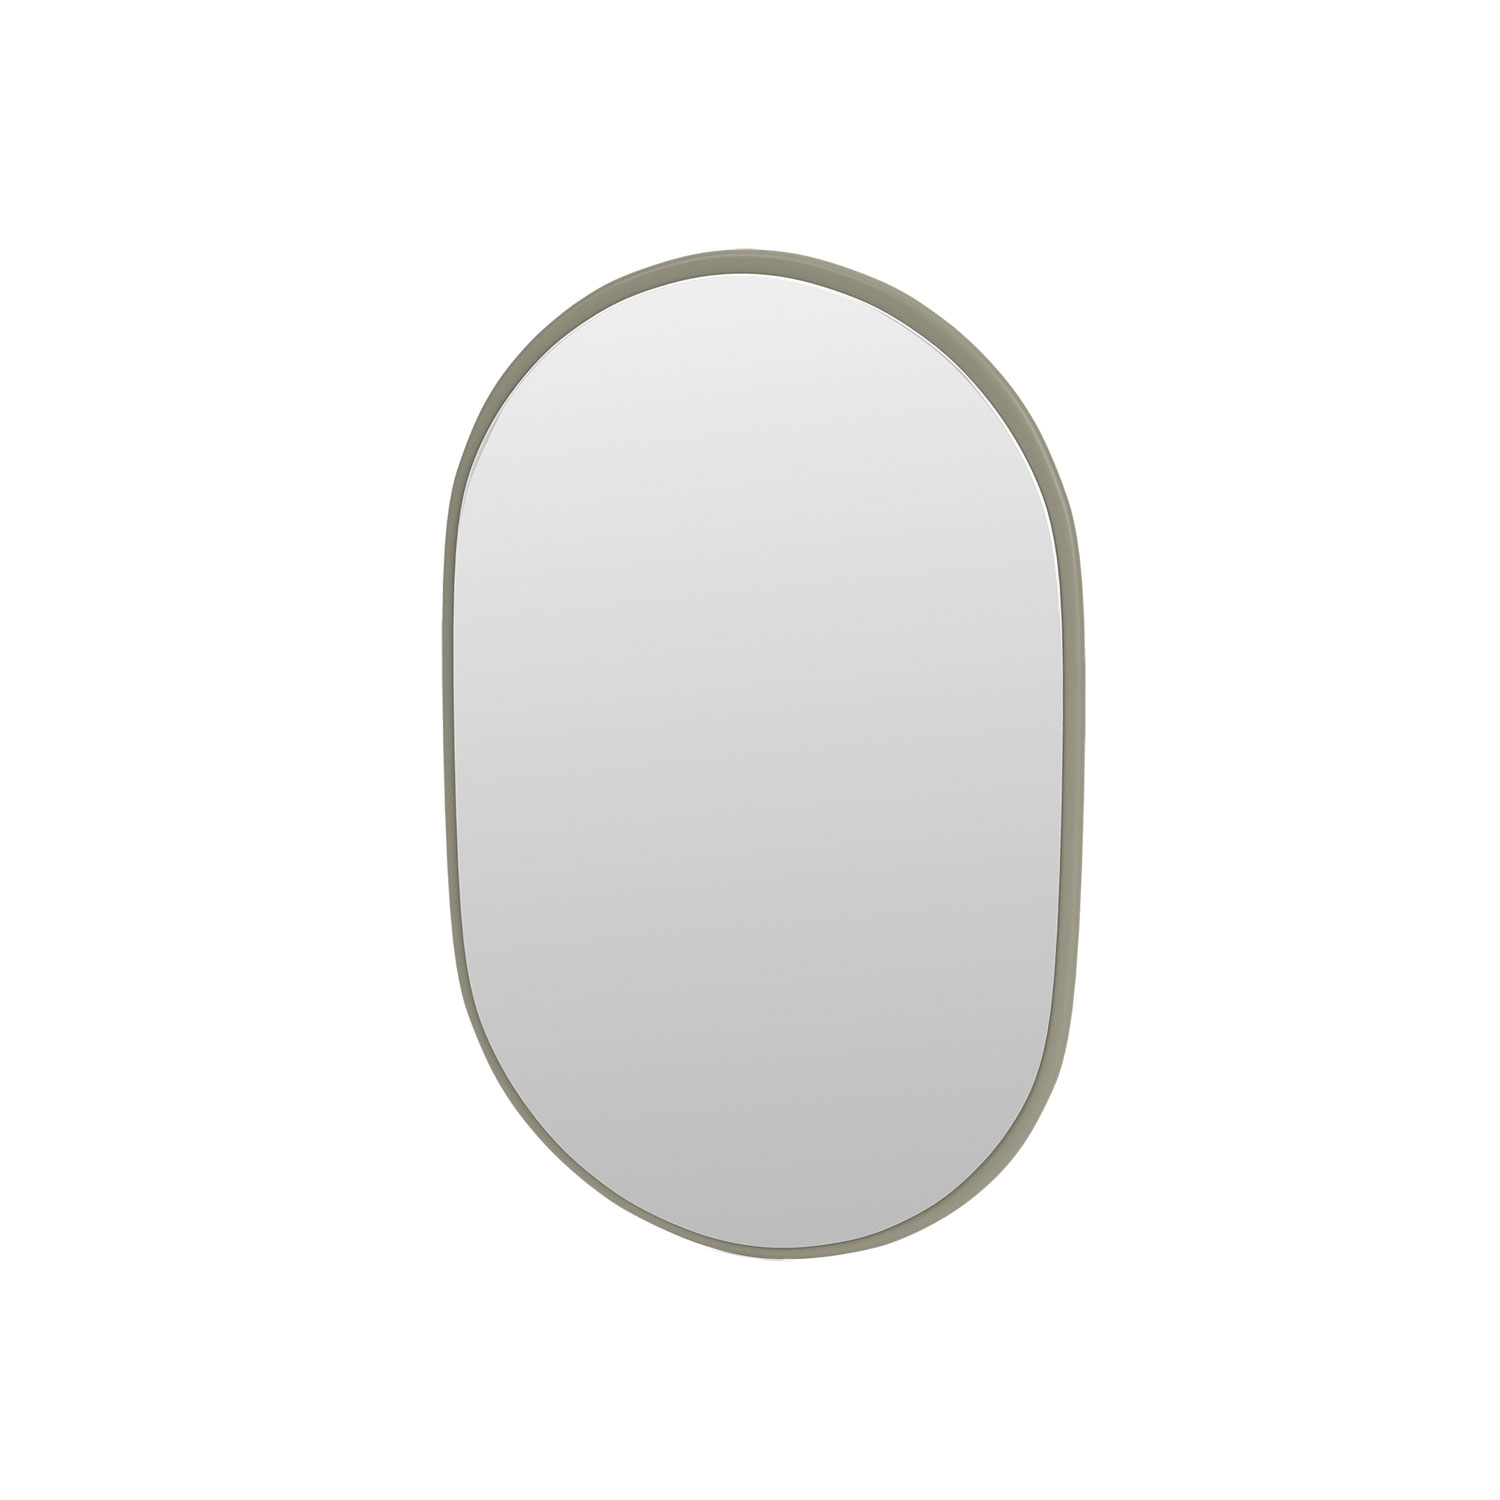 Bath oval mirror, Fennel